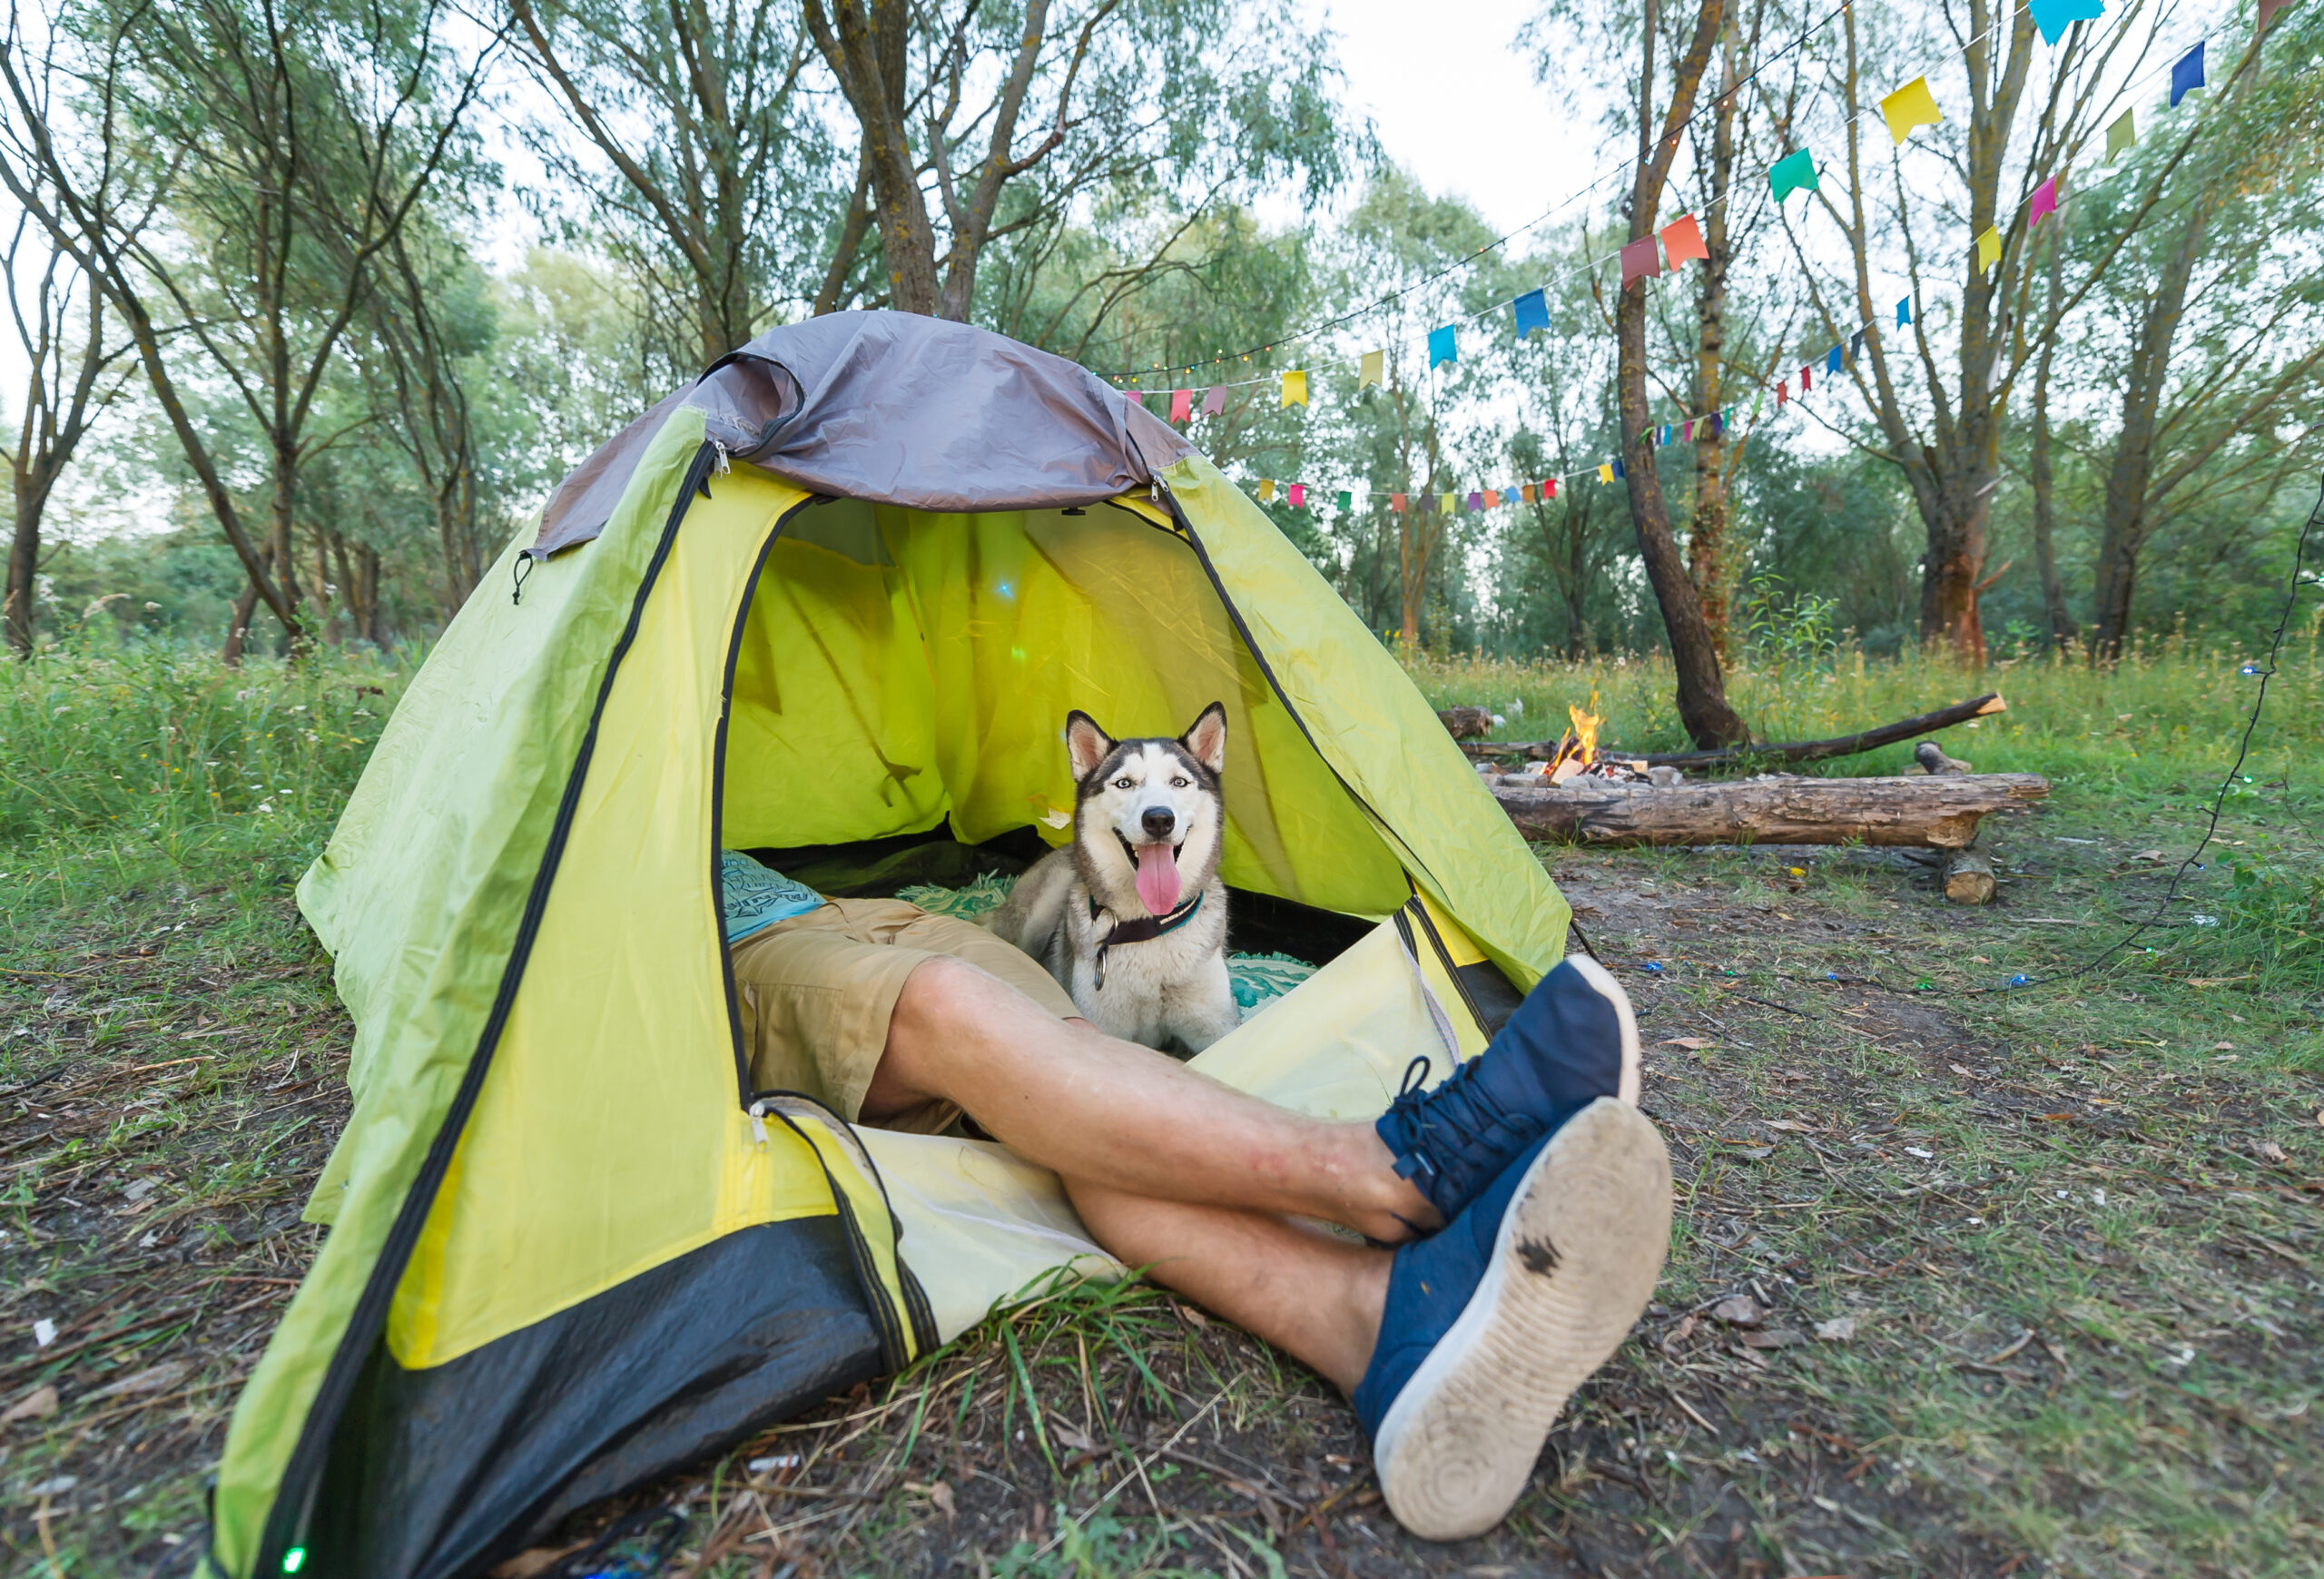 Take your dog camping